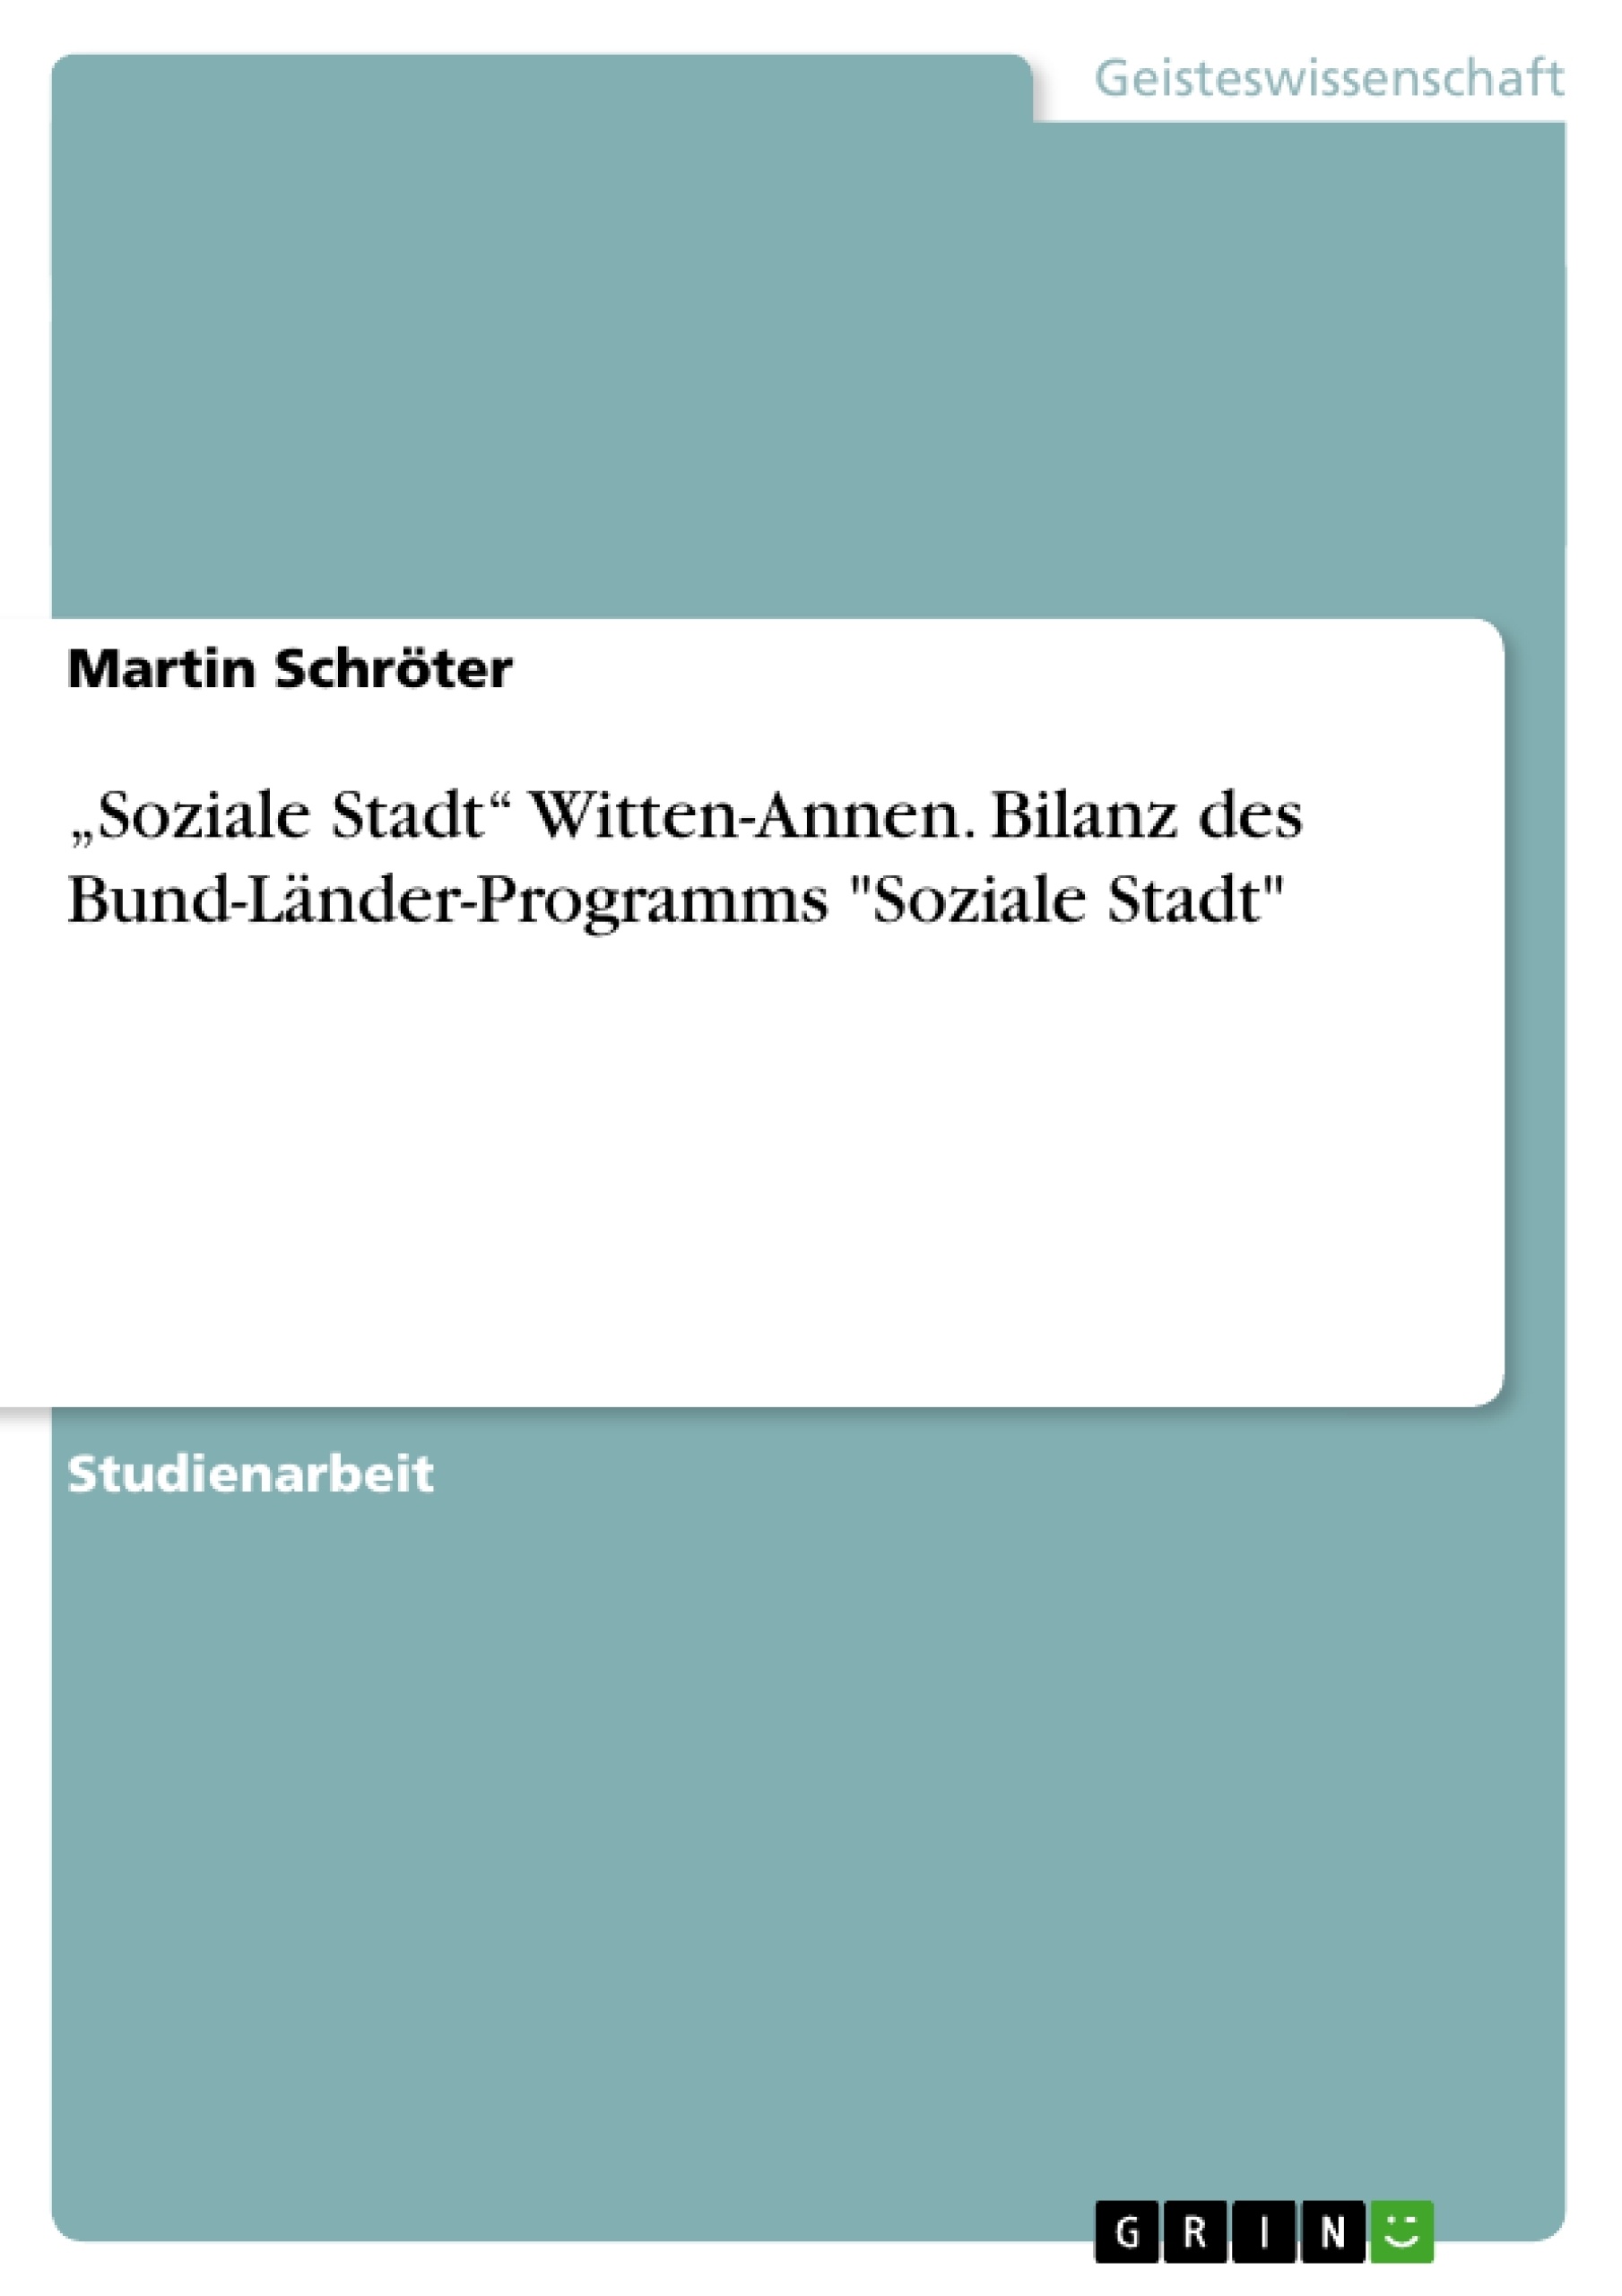 Titel: „Soziale Stadt“ Witten-Annen. Bilanz des Bund-Länder-Programms "Soziale Stadt"